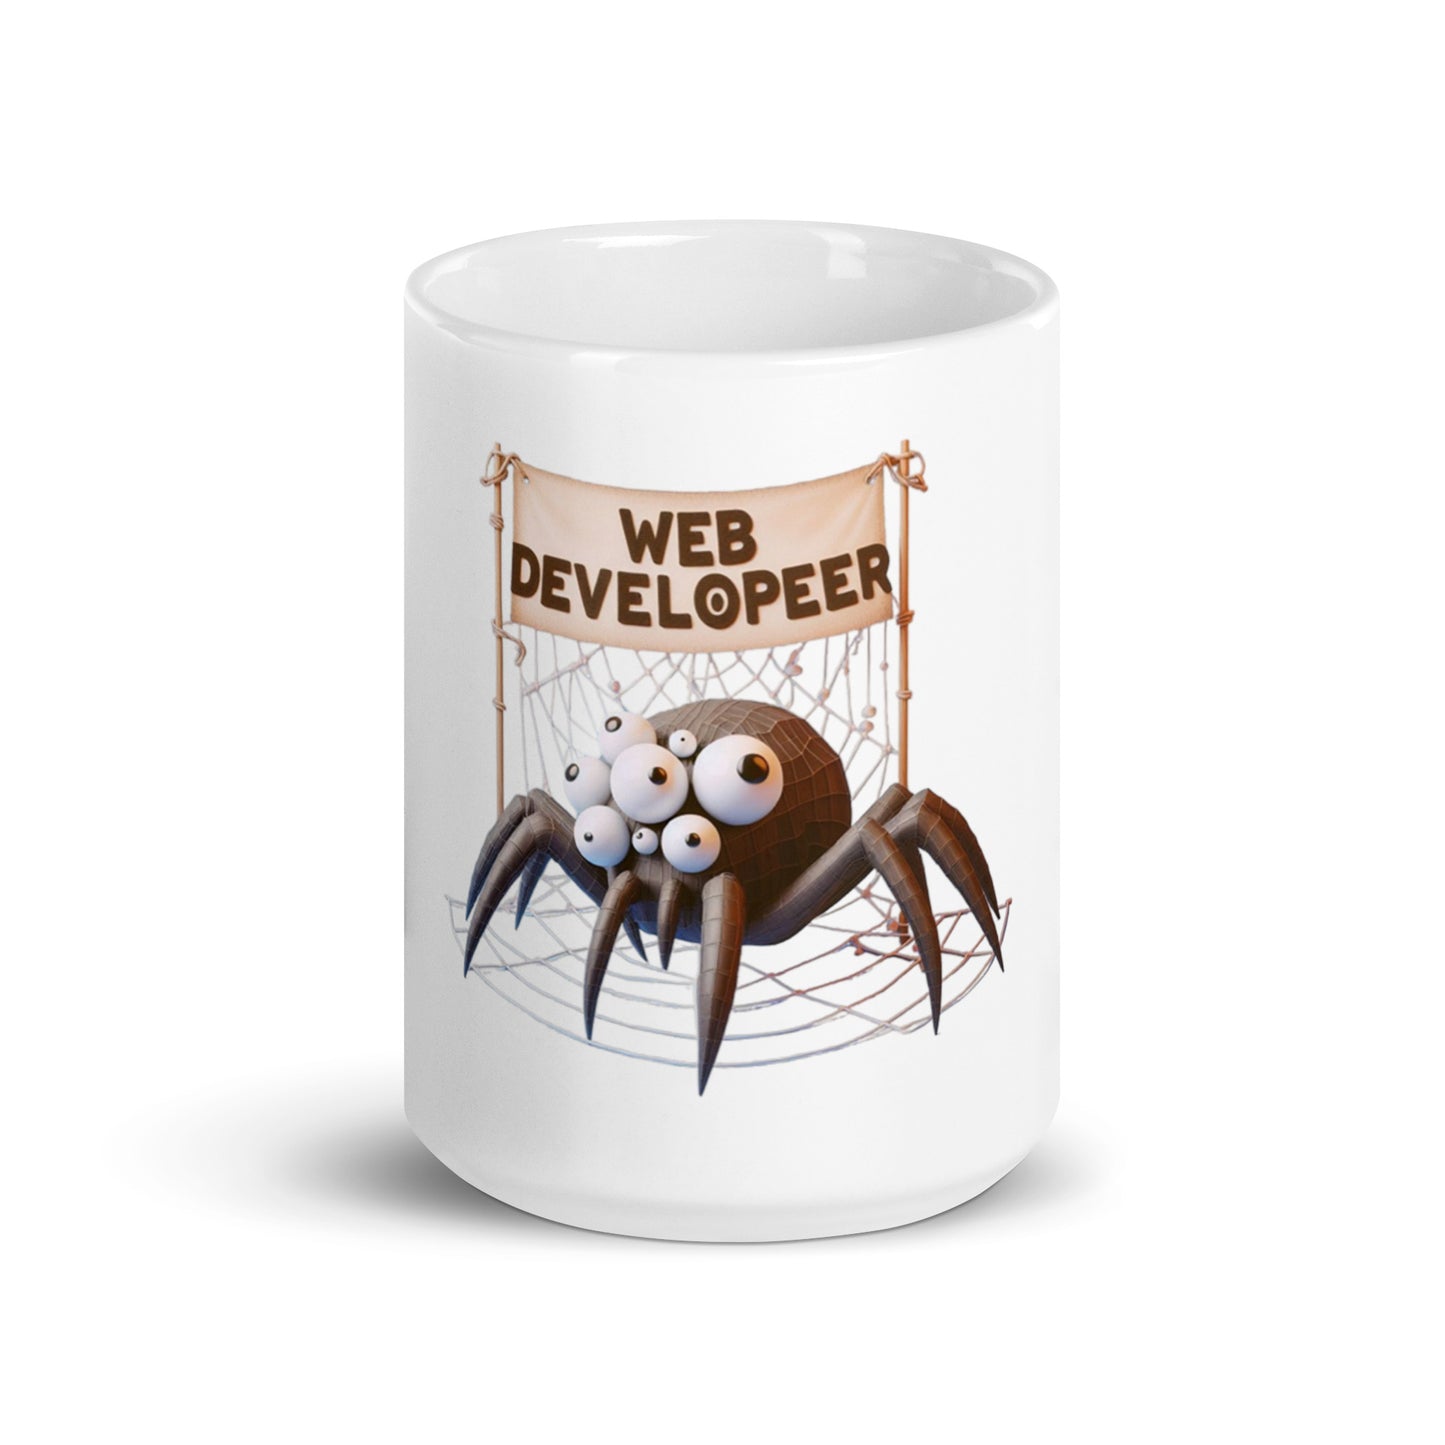 Web Developer mug